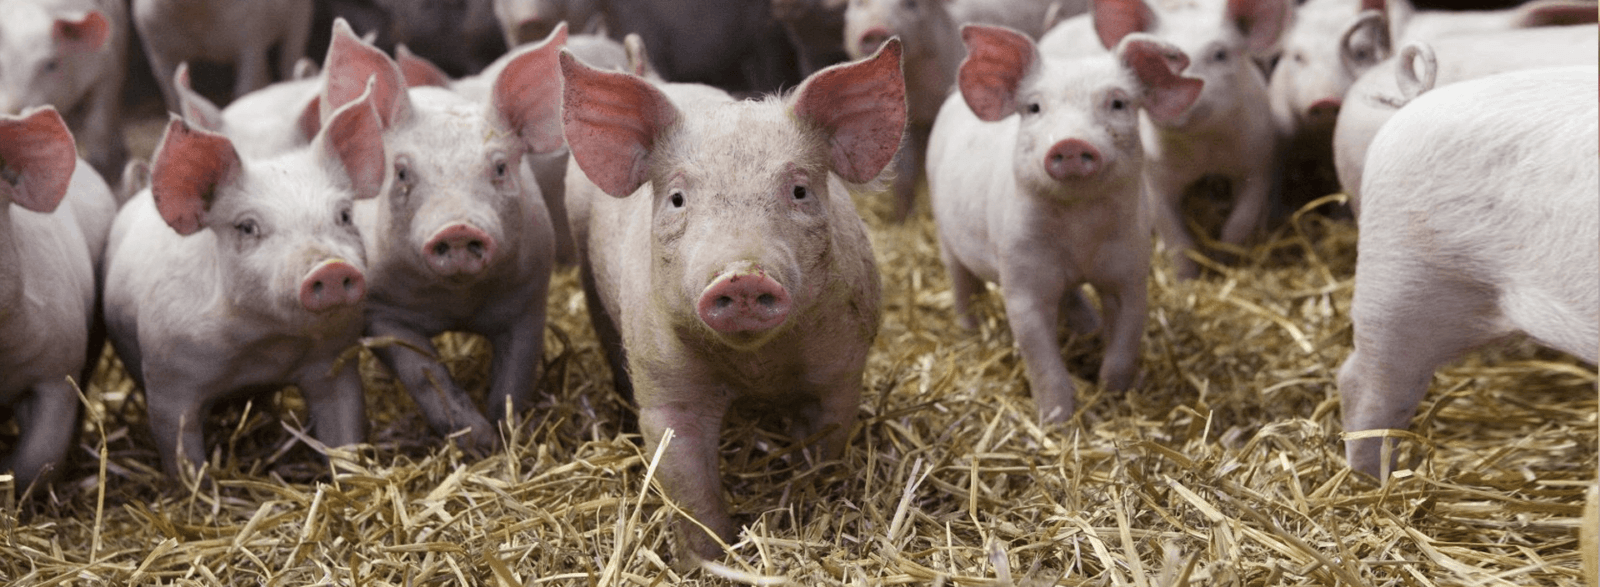 Запрет на разведение свиней в частном секторе